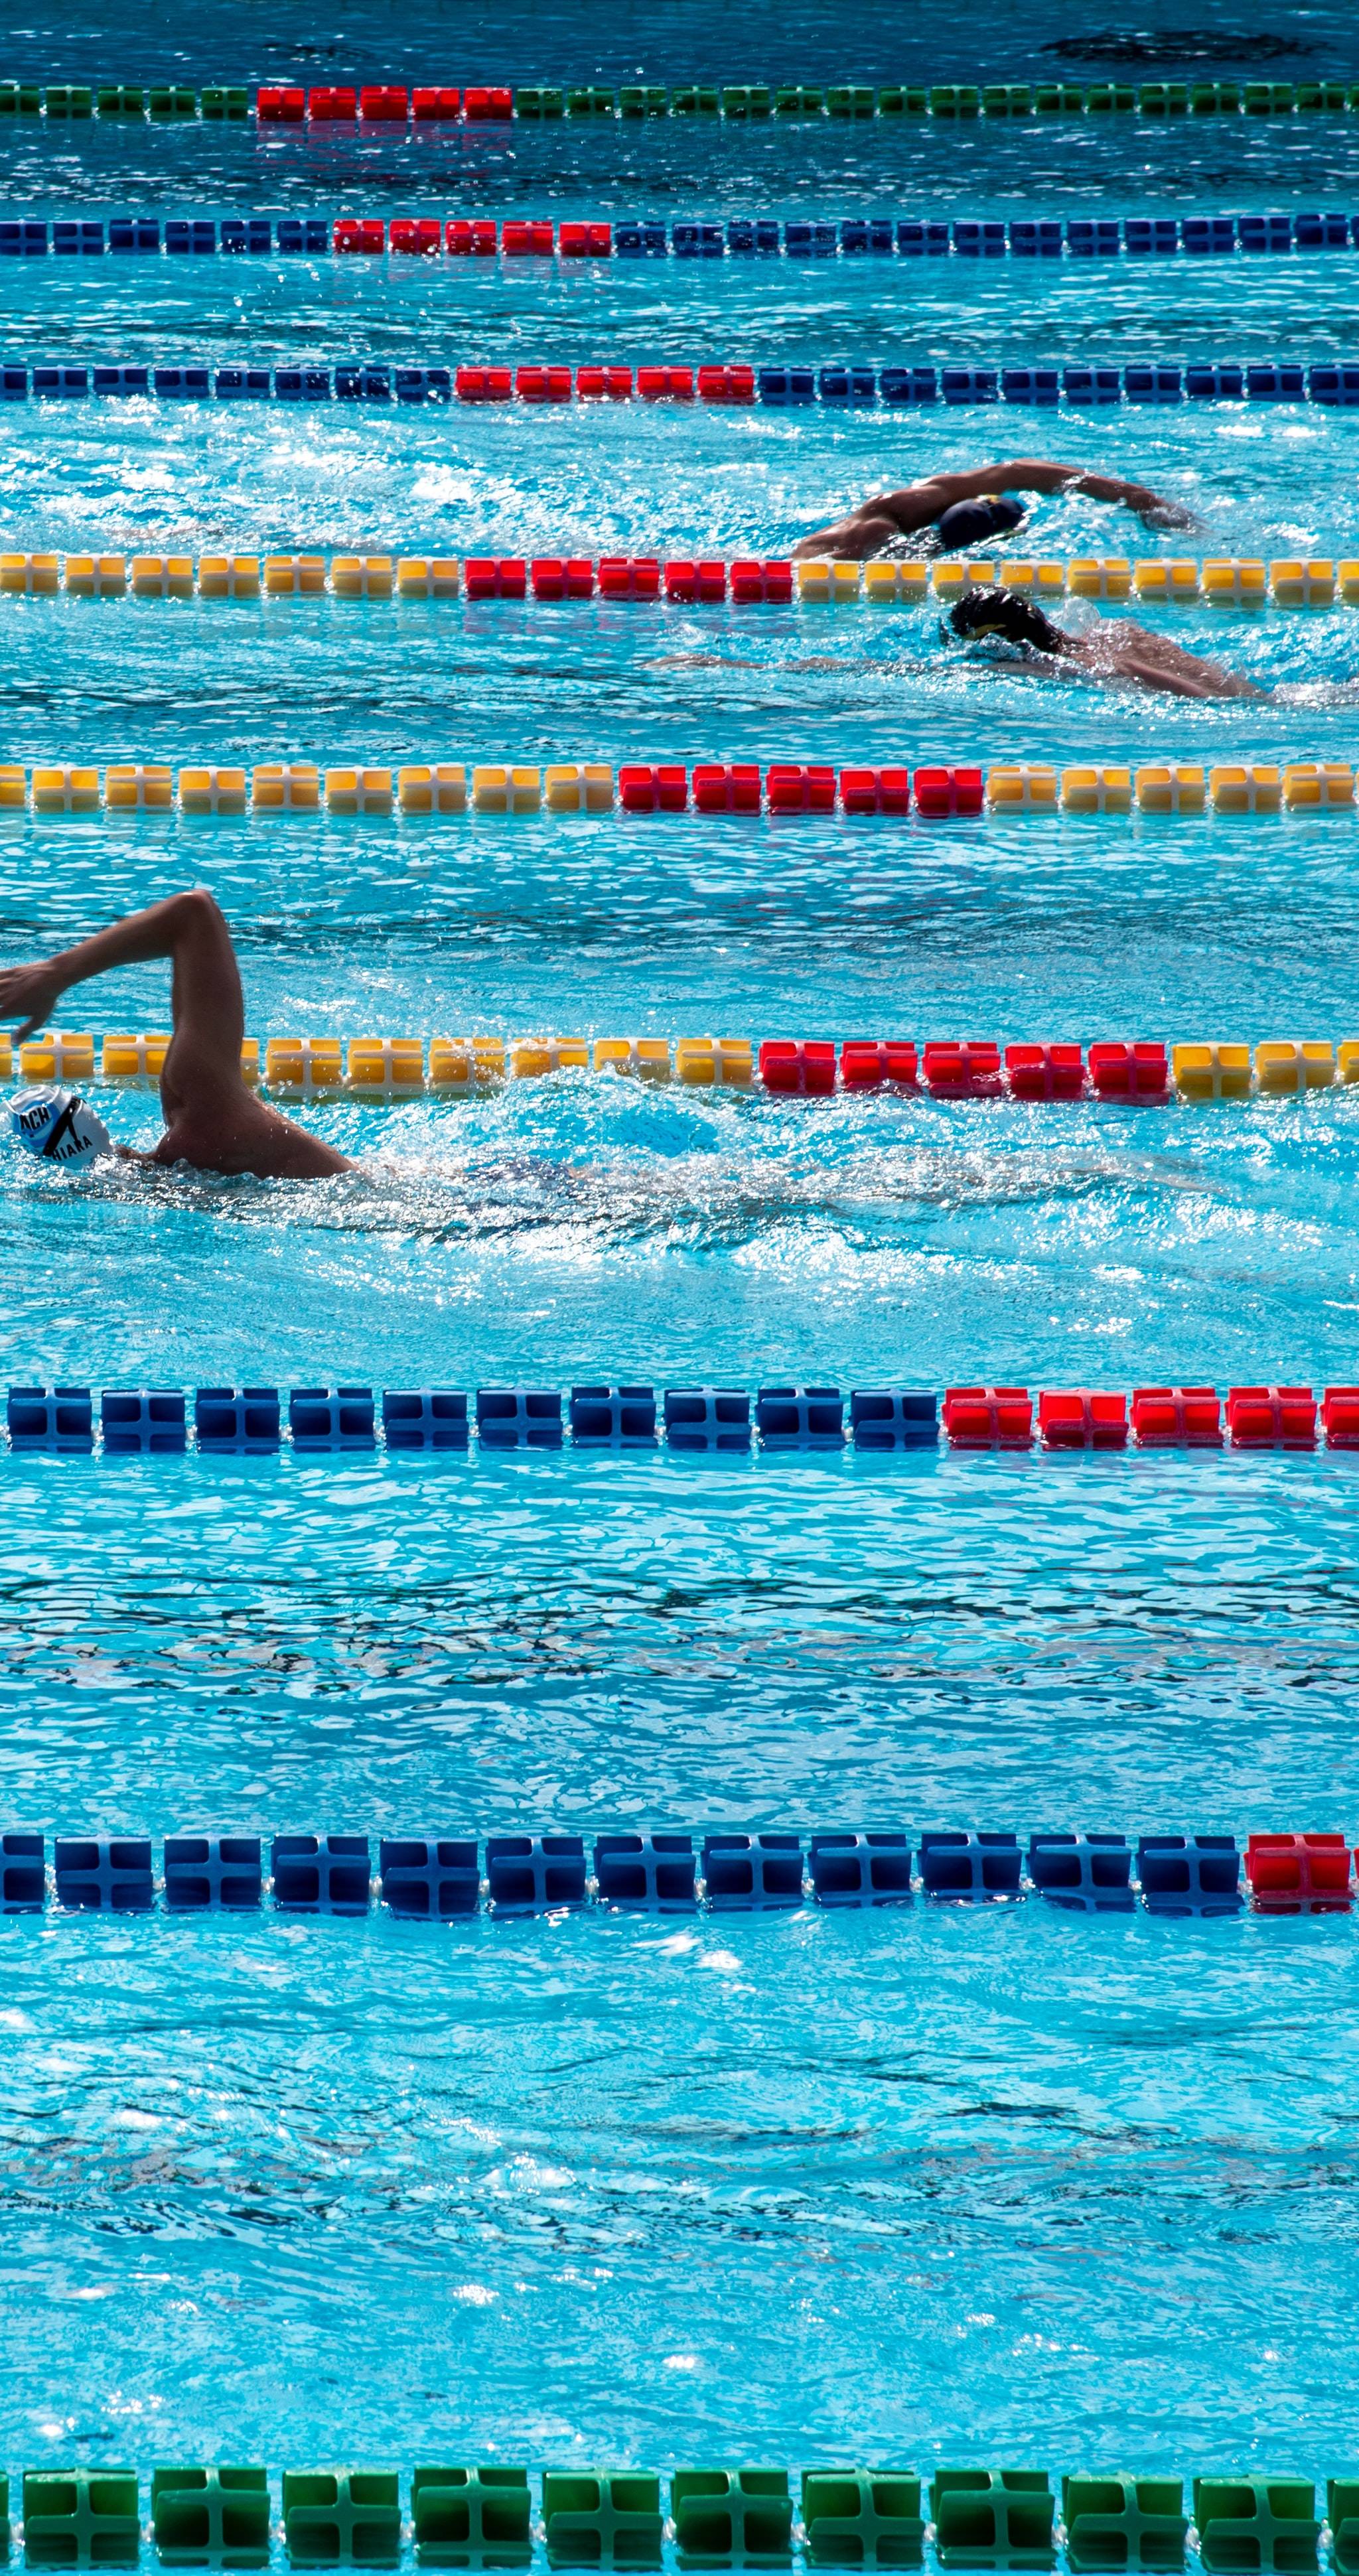 Bristol Aquatics Club promotes diversity in swimming